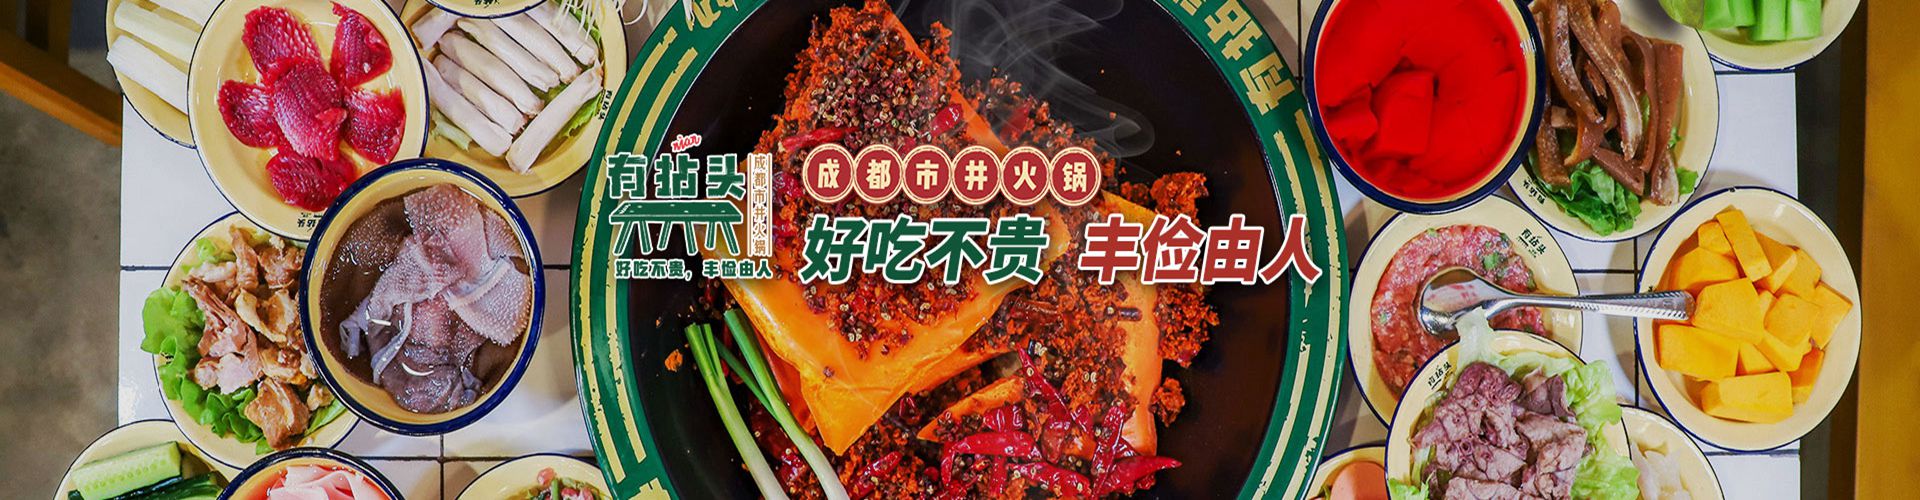  Youniantou Chengdu Hot Pot